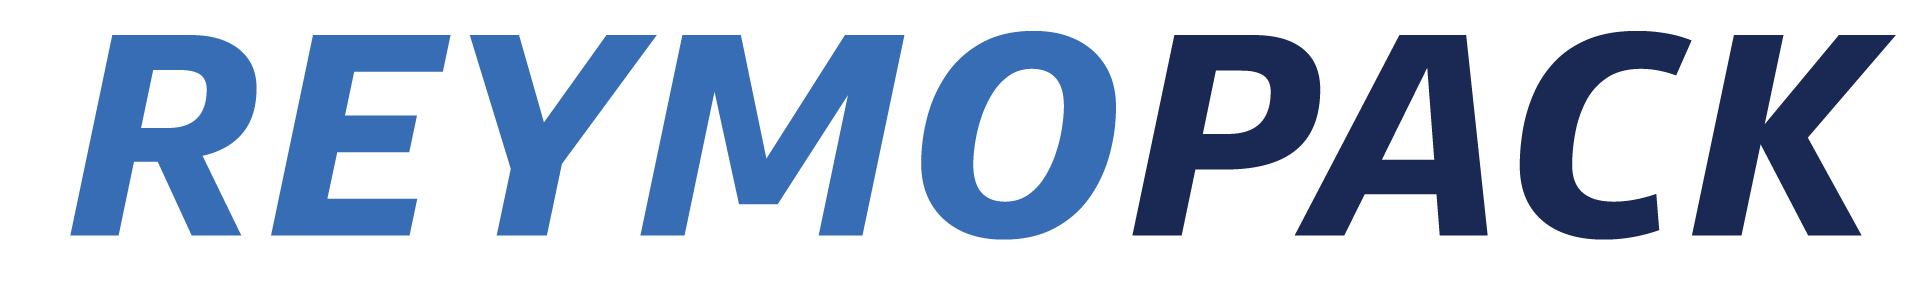 Reymopack logo